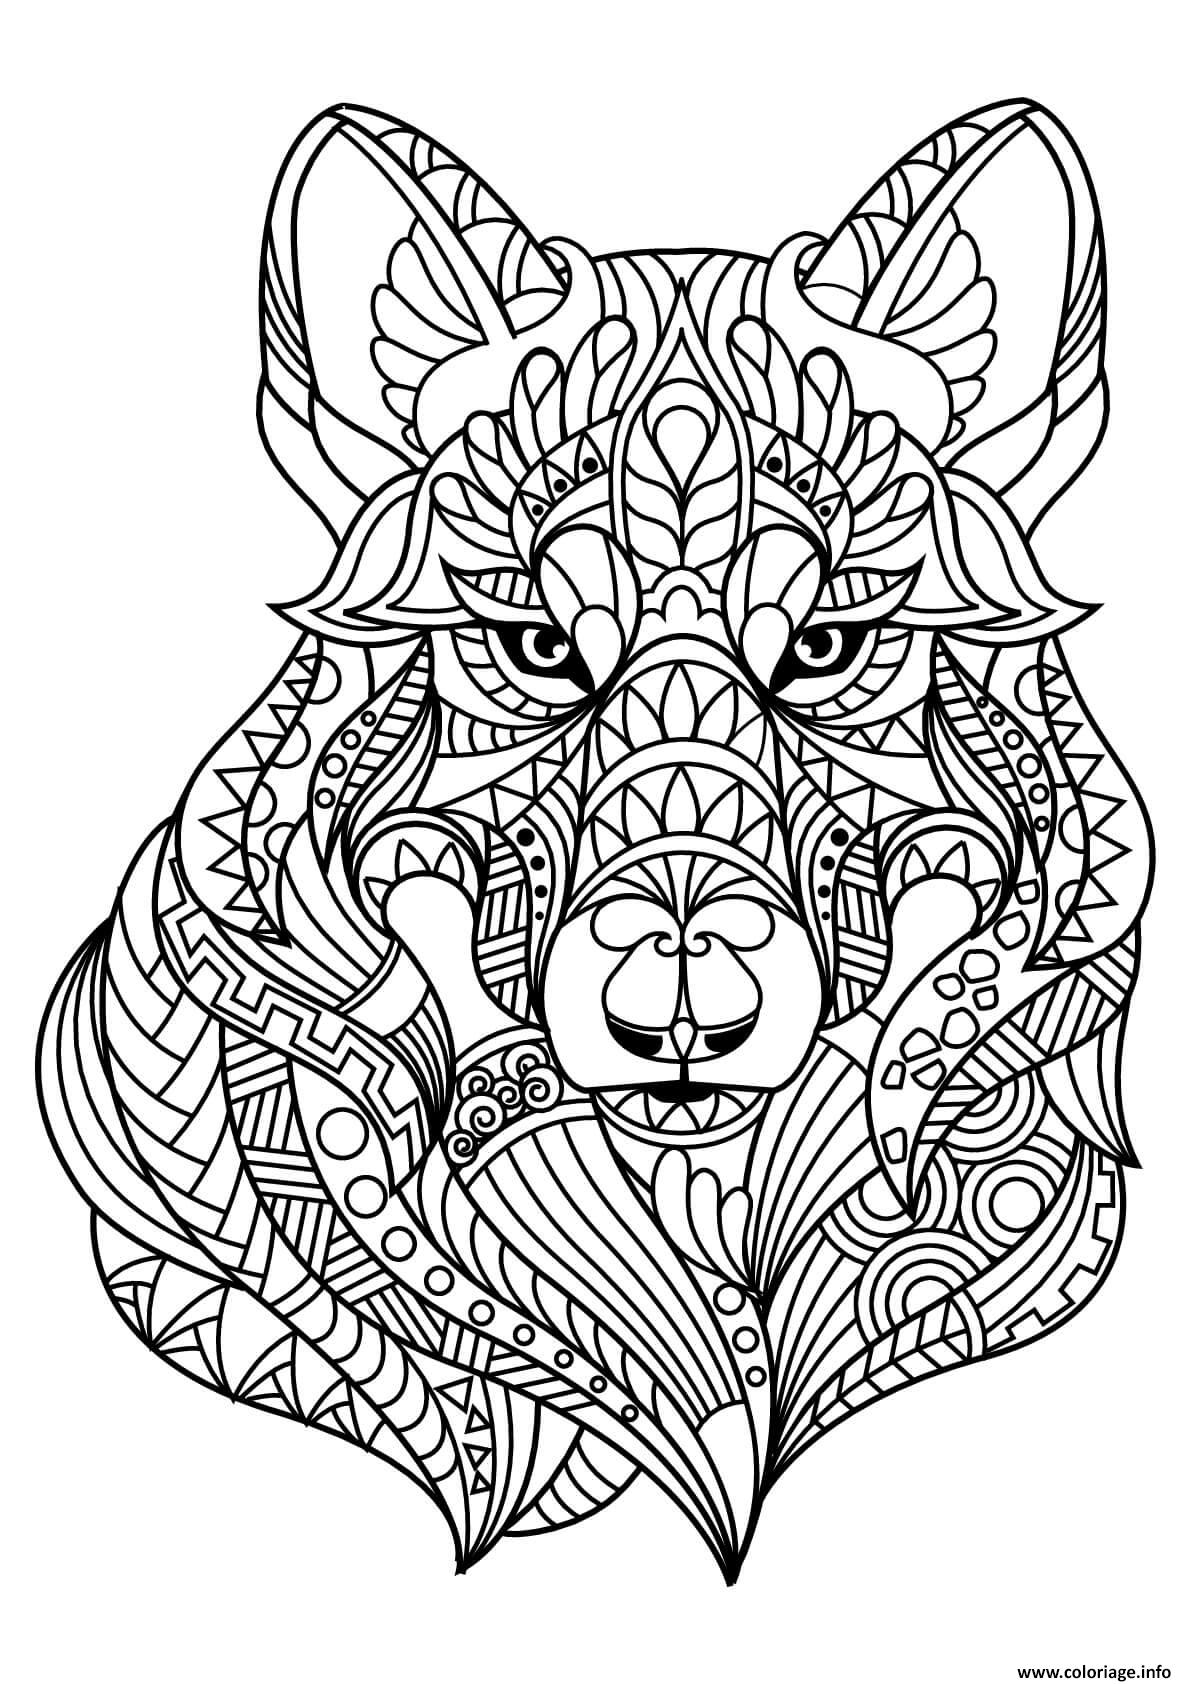 Dessin livre zentangle loup animal Coloriage Gratuit à Imprimer